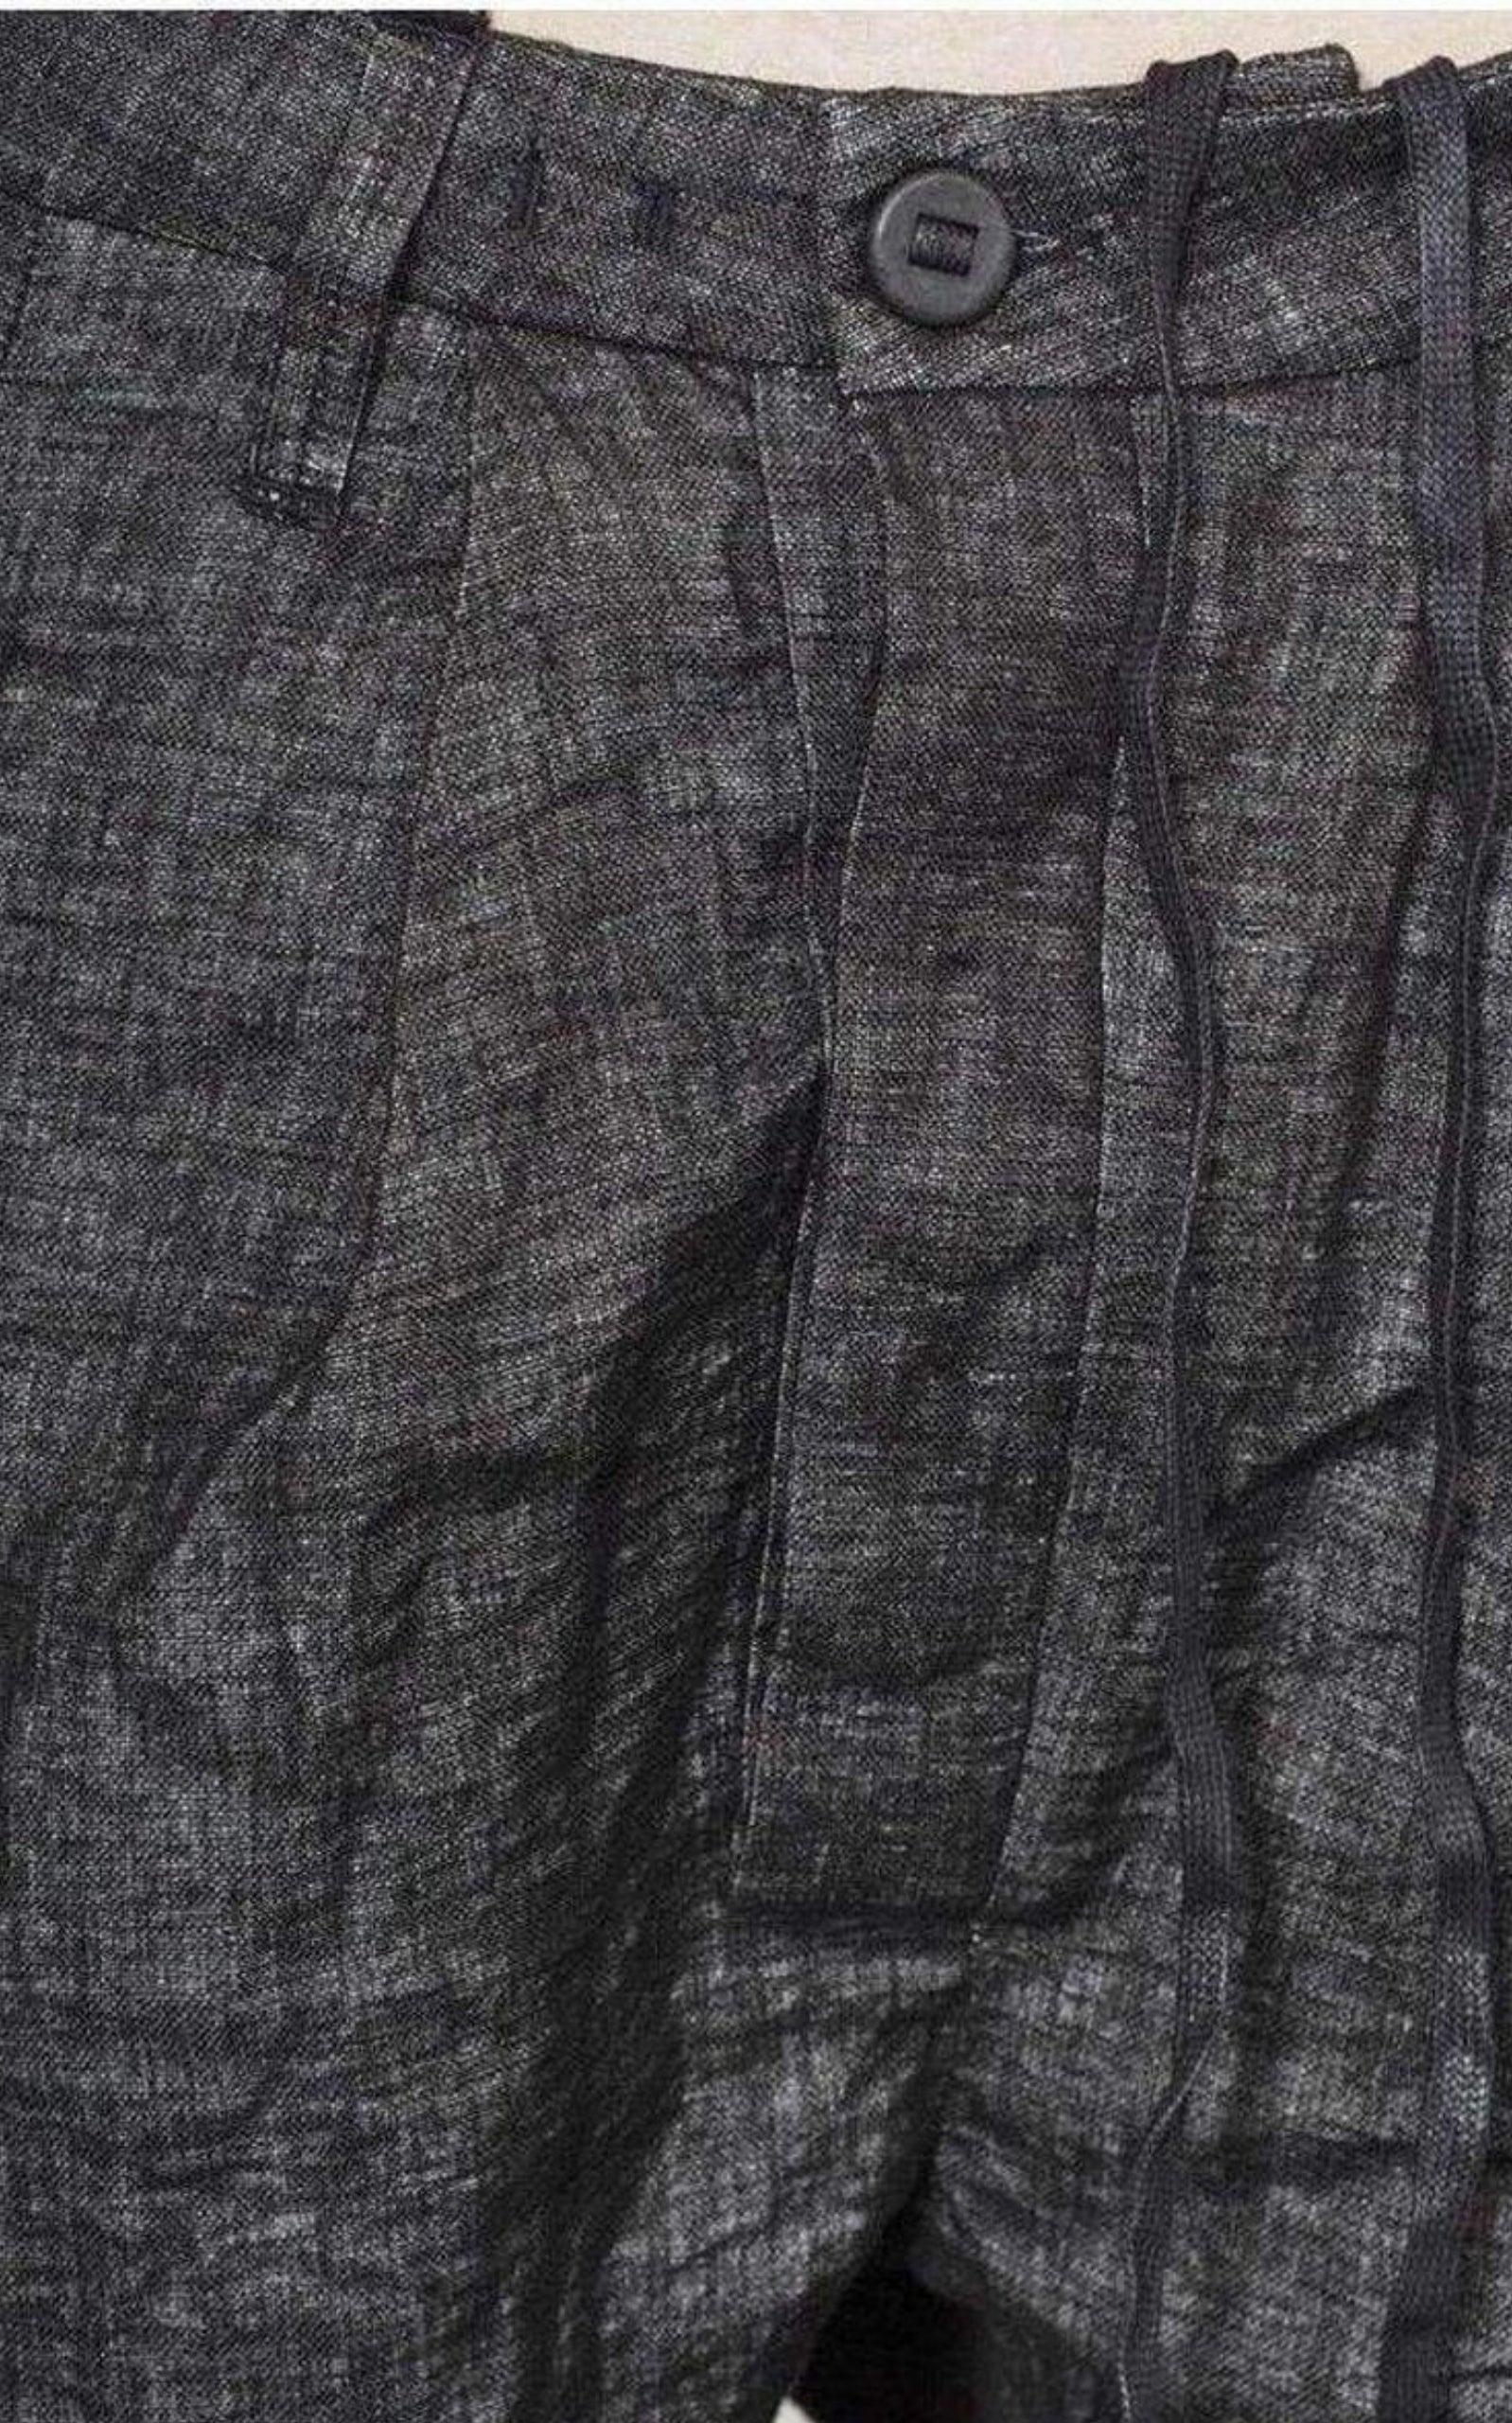  Boris Bidjan SaberiLoose Fit Grey Trousers Pants - Runway Catalog